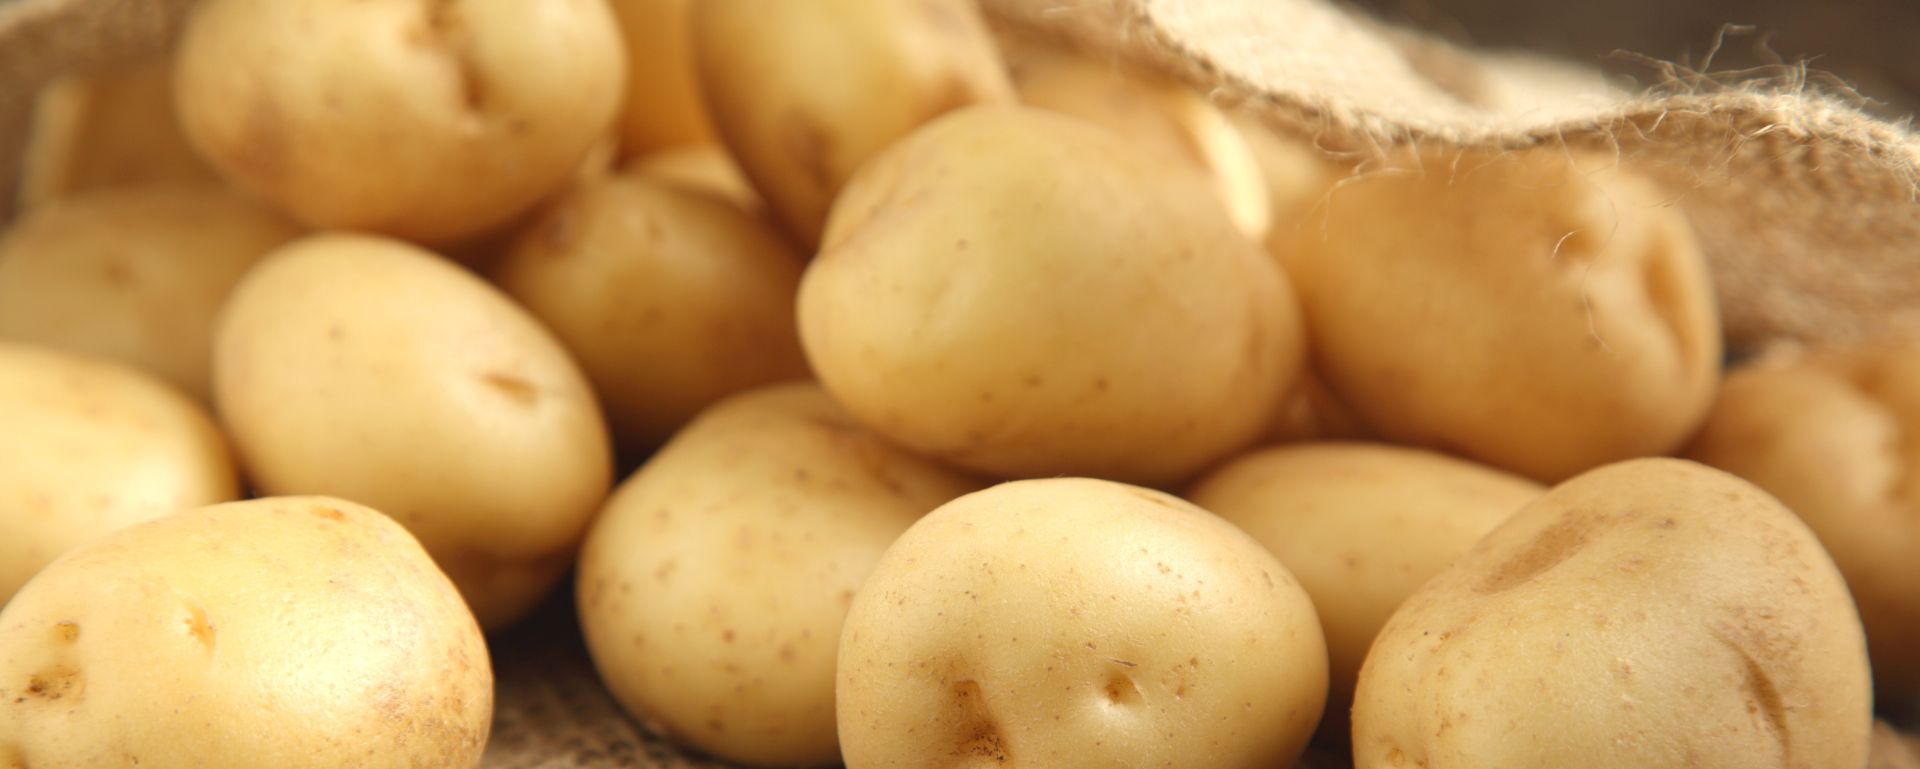 Jetzt anmelden: Internationale Kartoffelwirtschaft diskutiert Zukunftsfragen